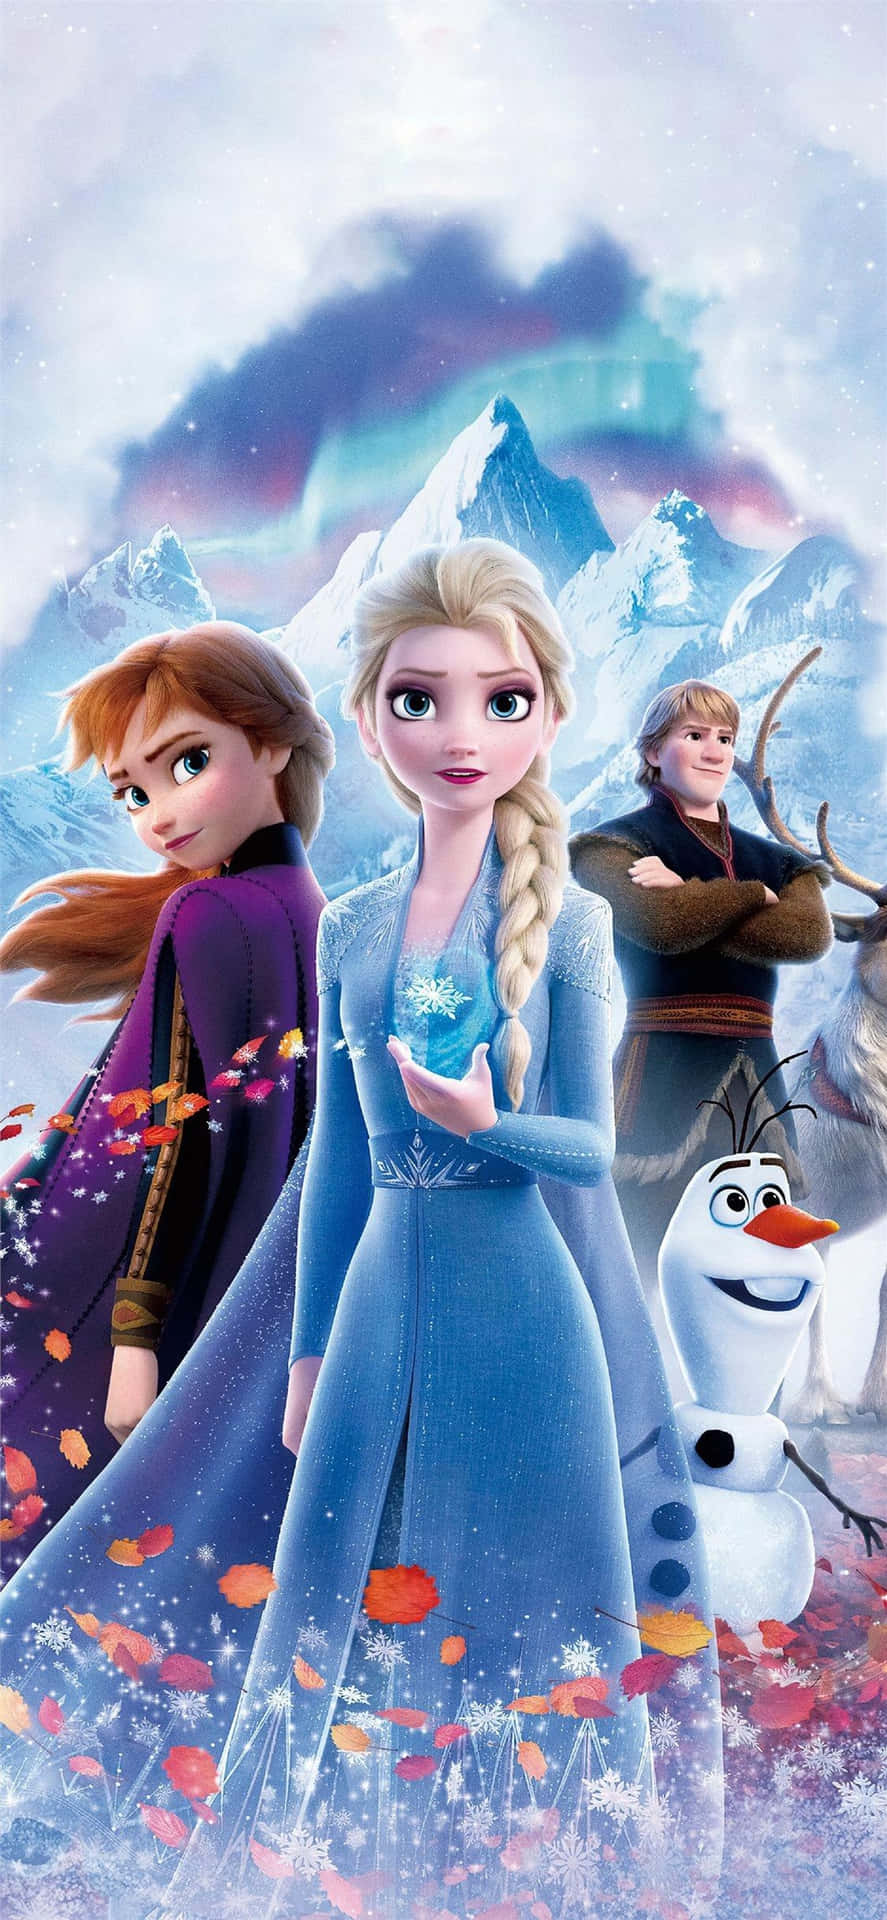 Fondode Pantalla De Disney Para Iphone X De Elsa Y Anna.